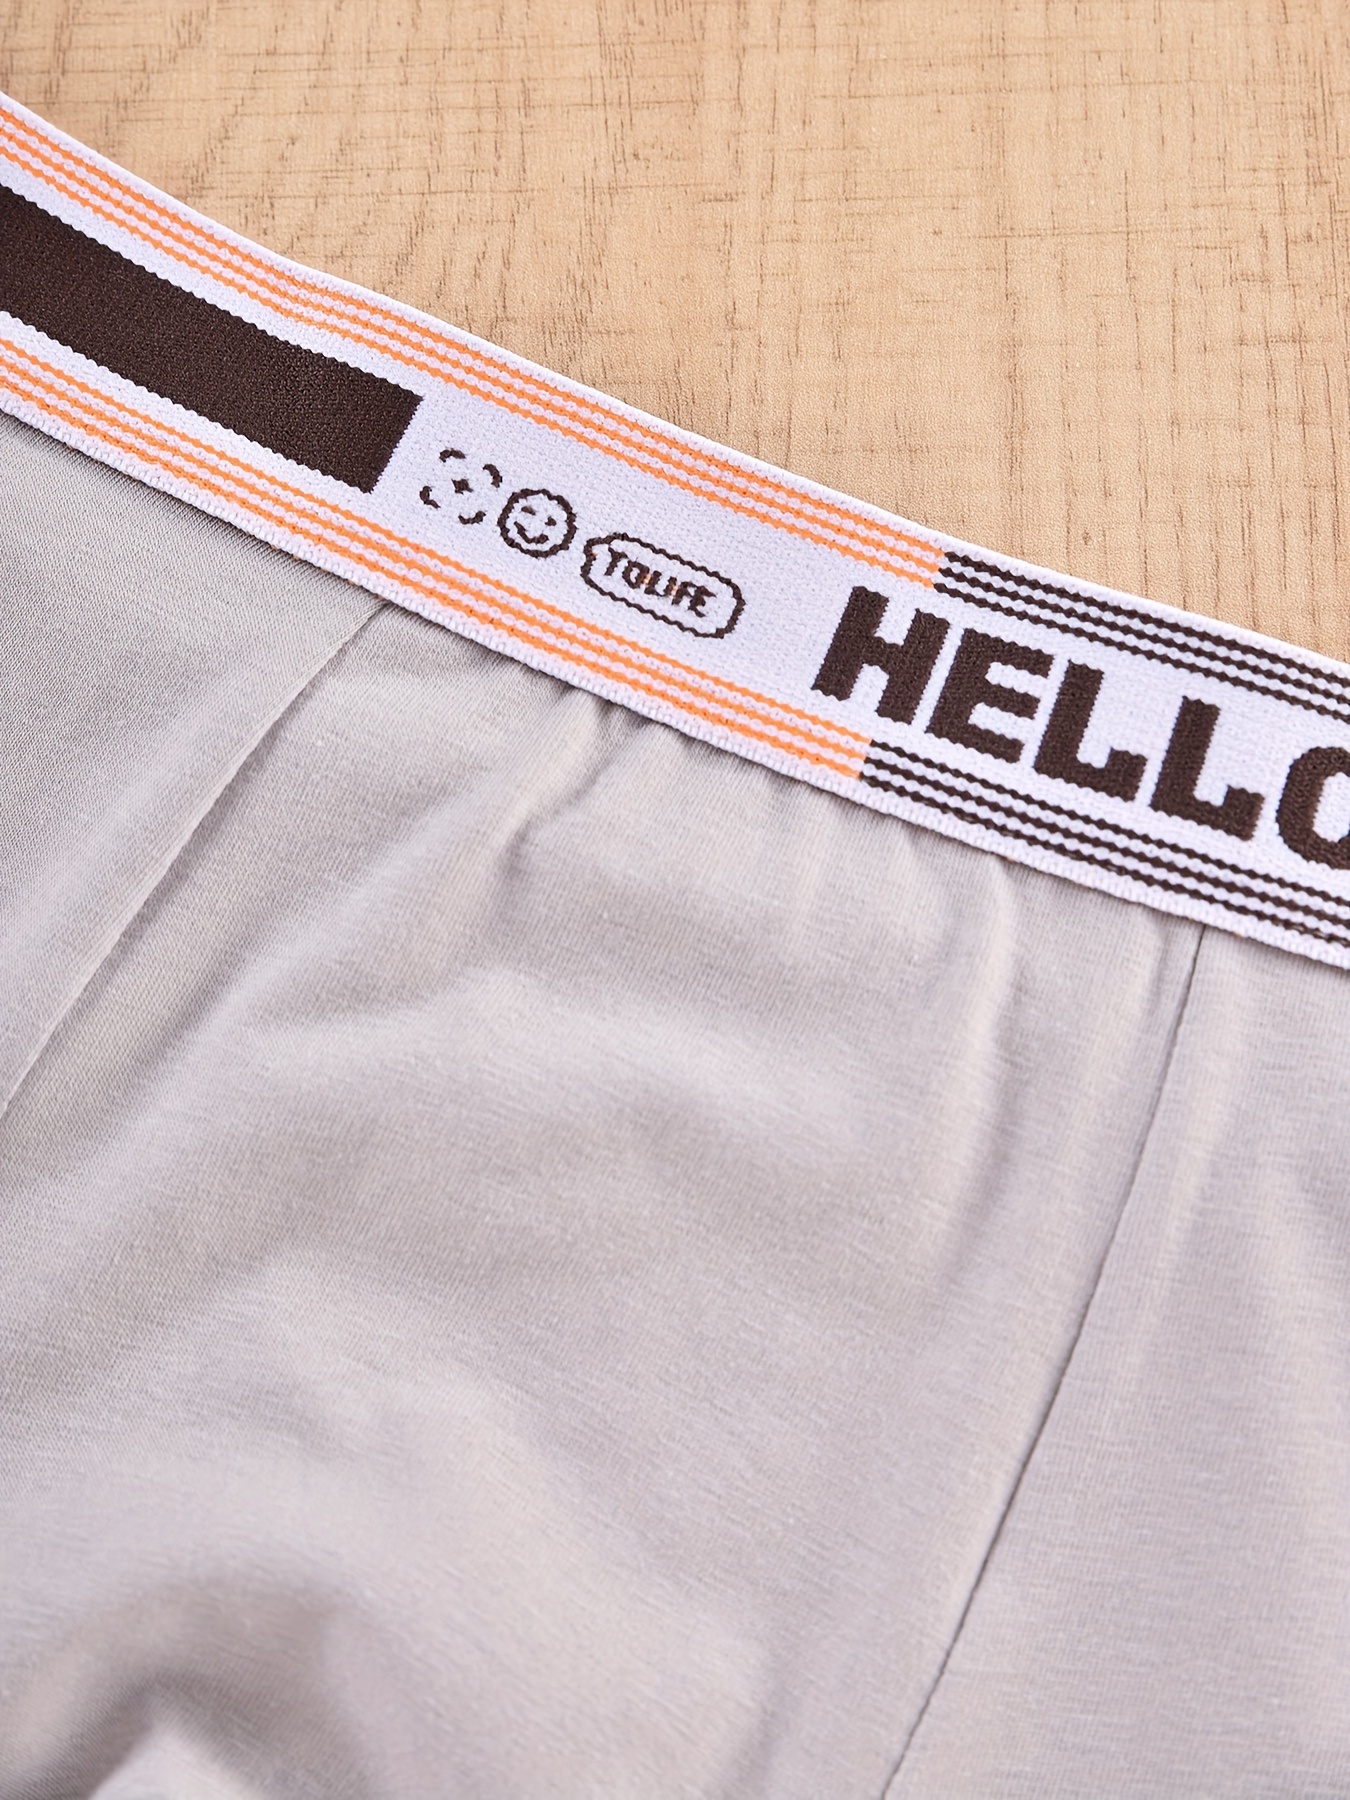 Men's Underwear 'hello' Print Fashion Cotton Boxer Briefs - Temu Canada